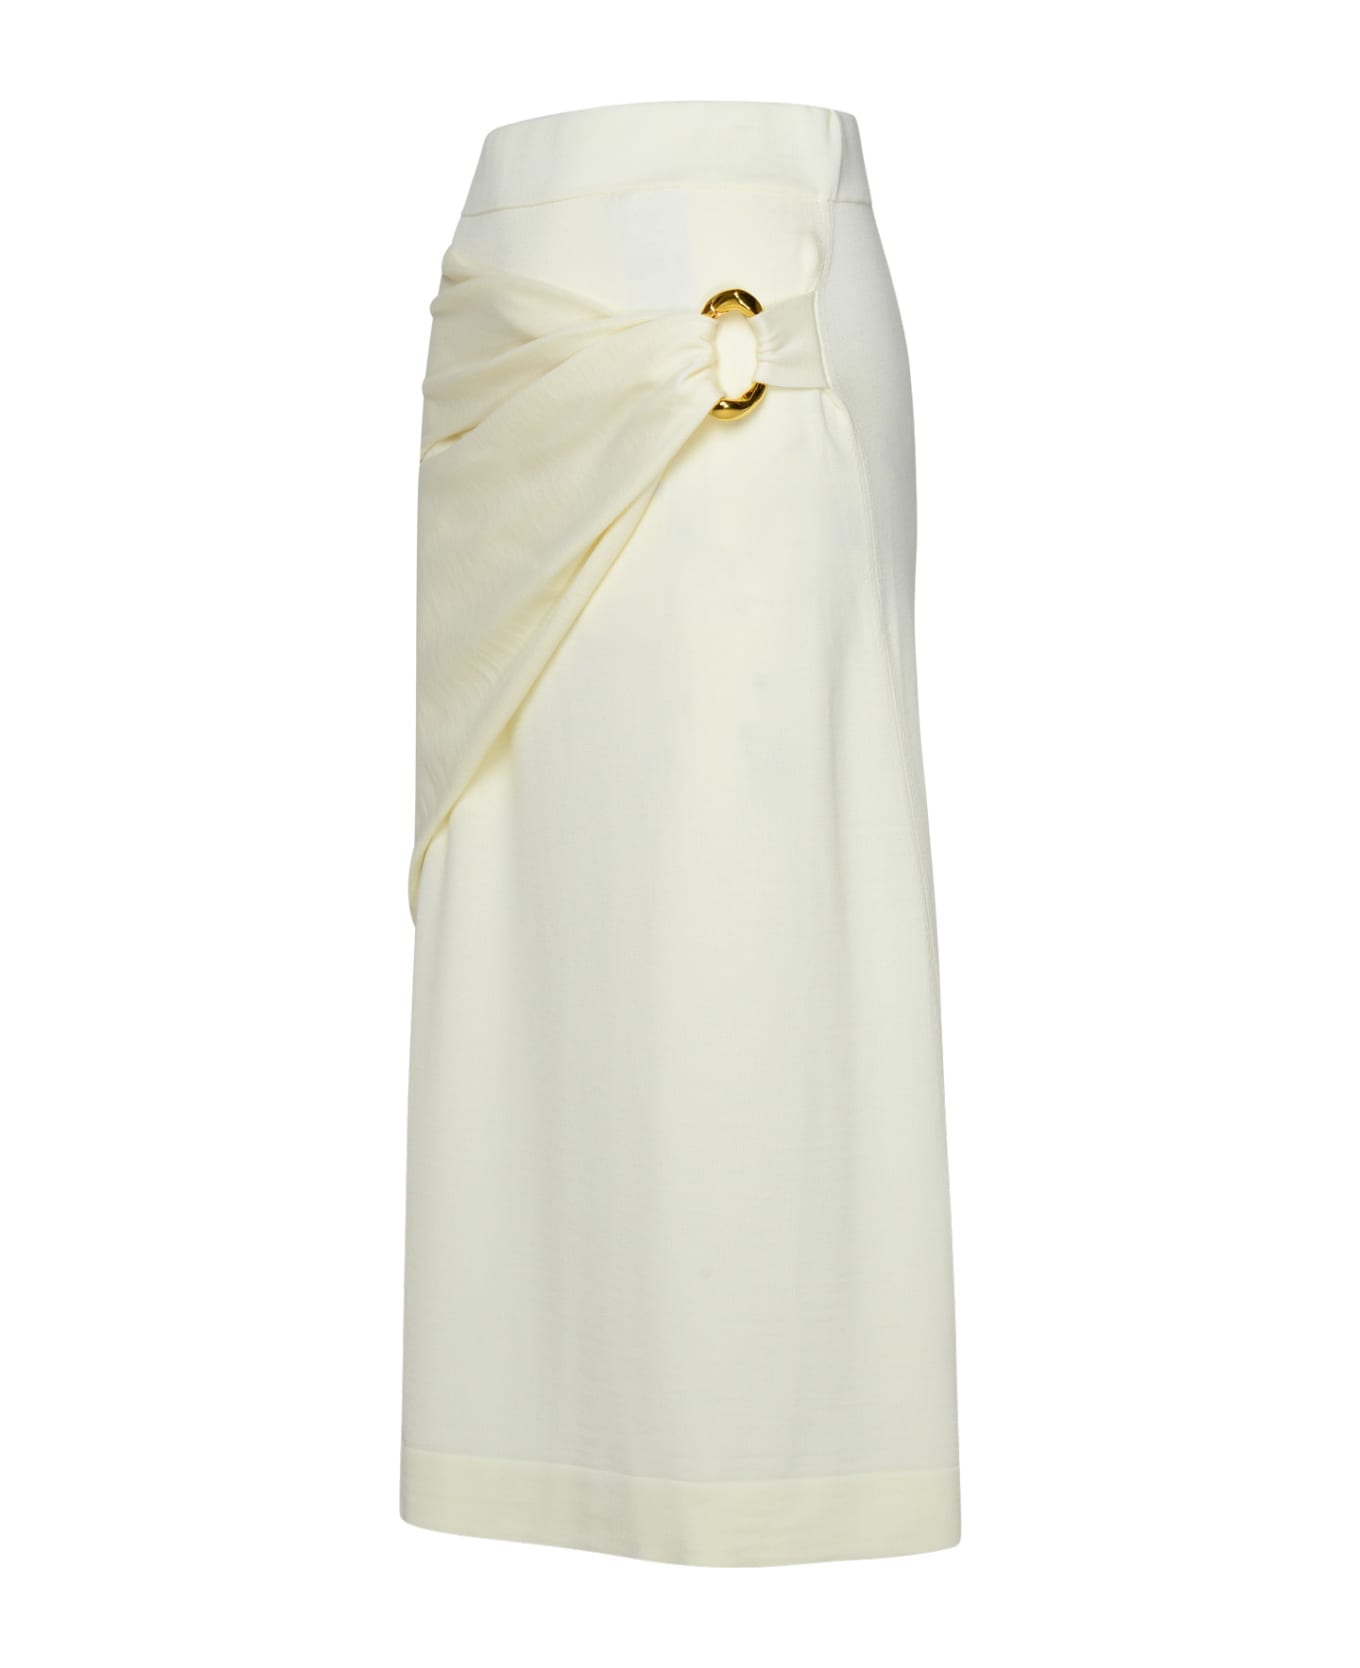 Jil Sander Cream Virgin Wool Skirt - White